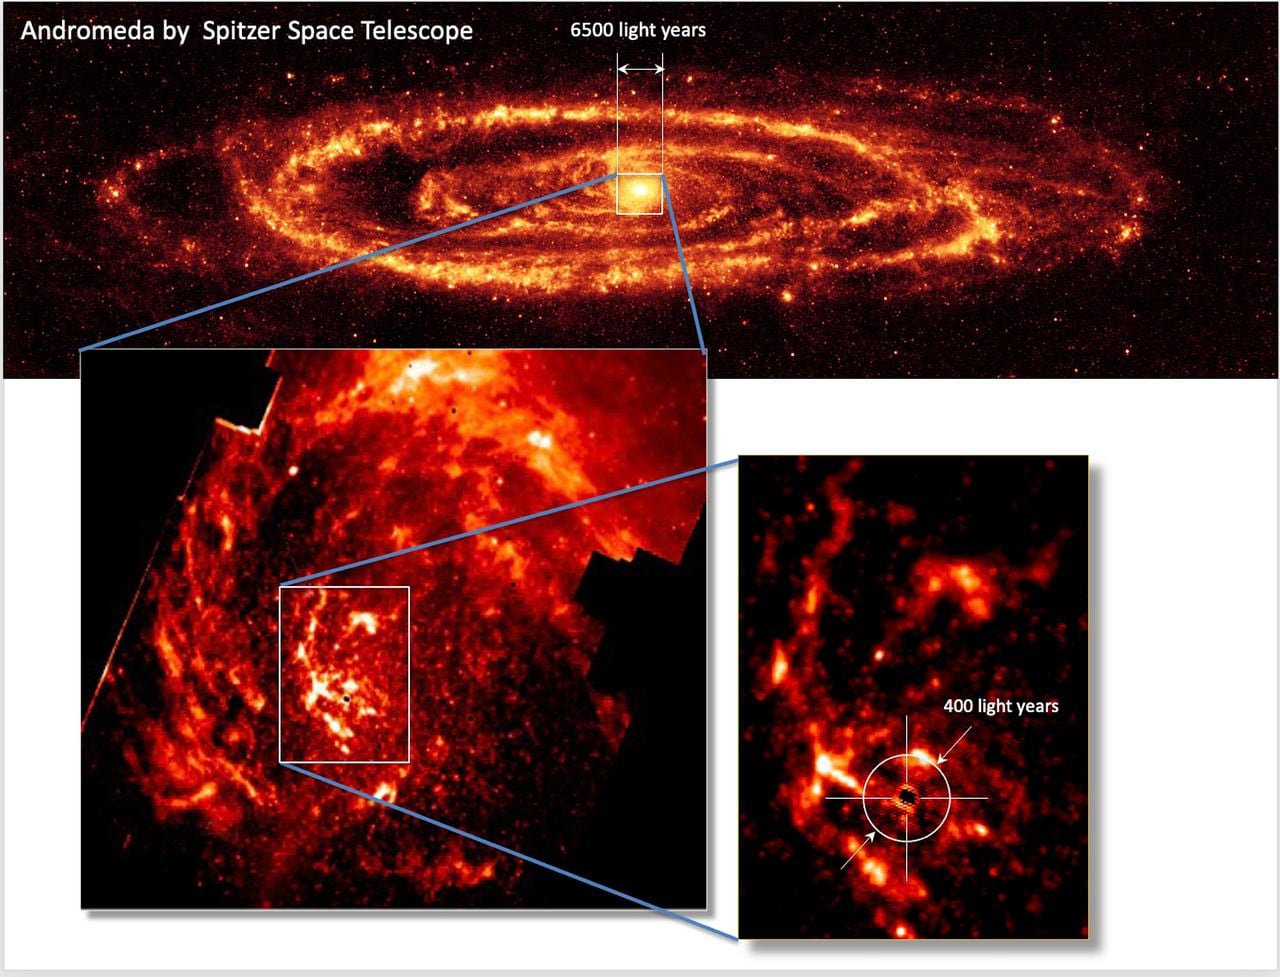 Un equipo científico internacional, liderado por la Universidad Observatorio de Munich y el IAC - Instituto de Astrofísica de Canarias, obtiene una visualización directa del proceso de alimentación del agujero negro central de la galaxia de Andrómeda.